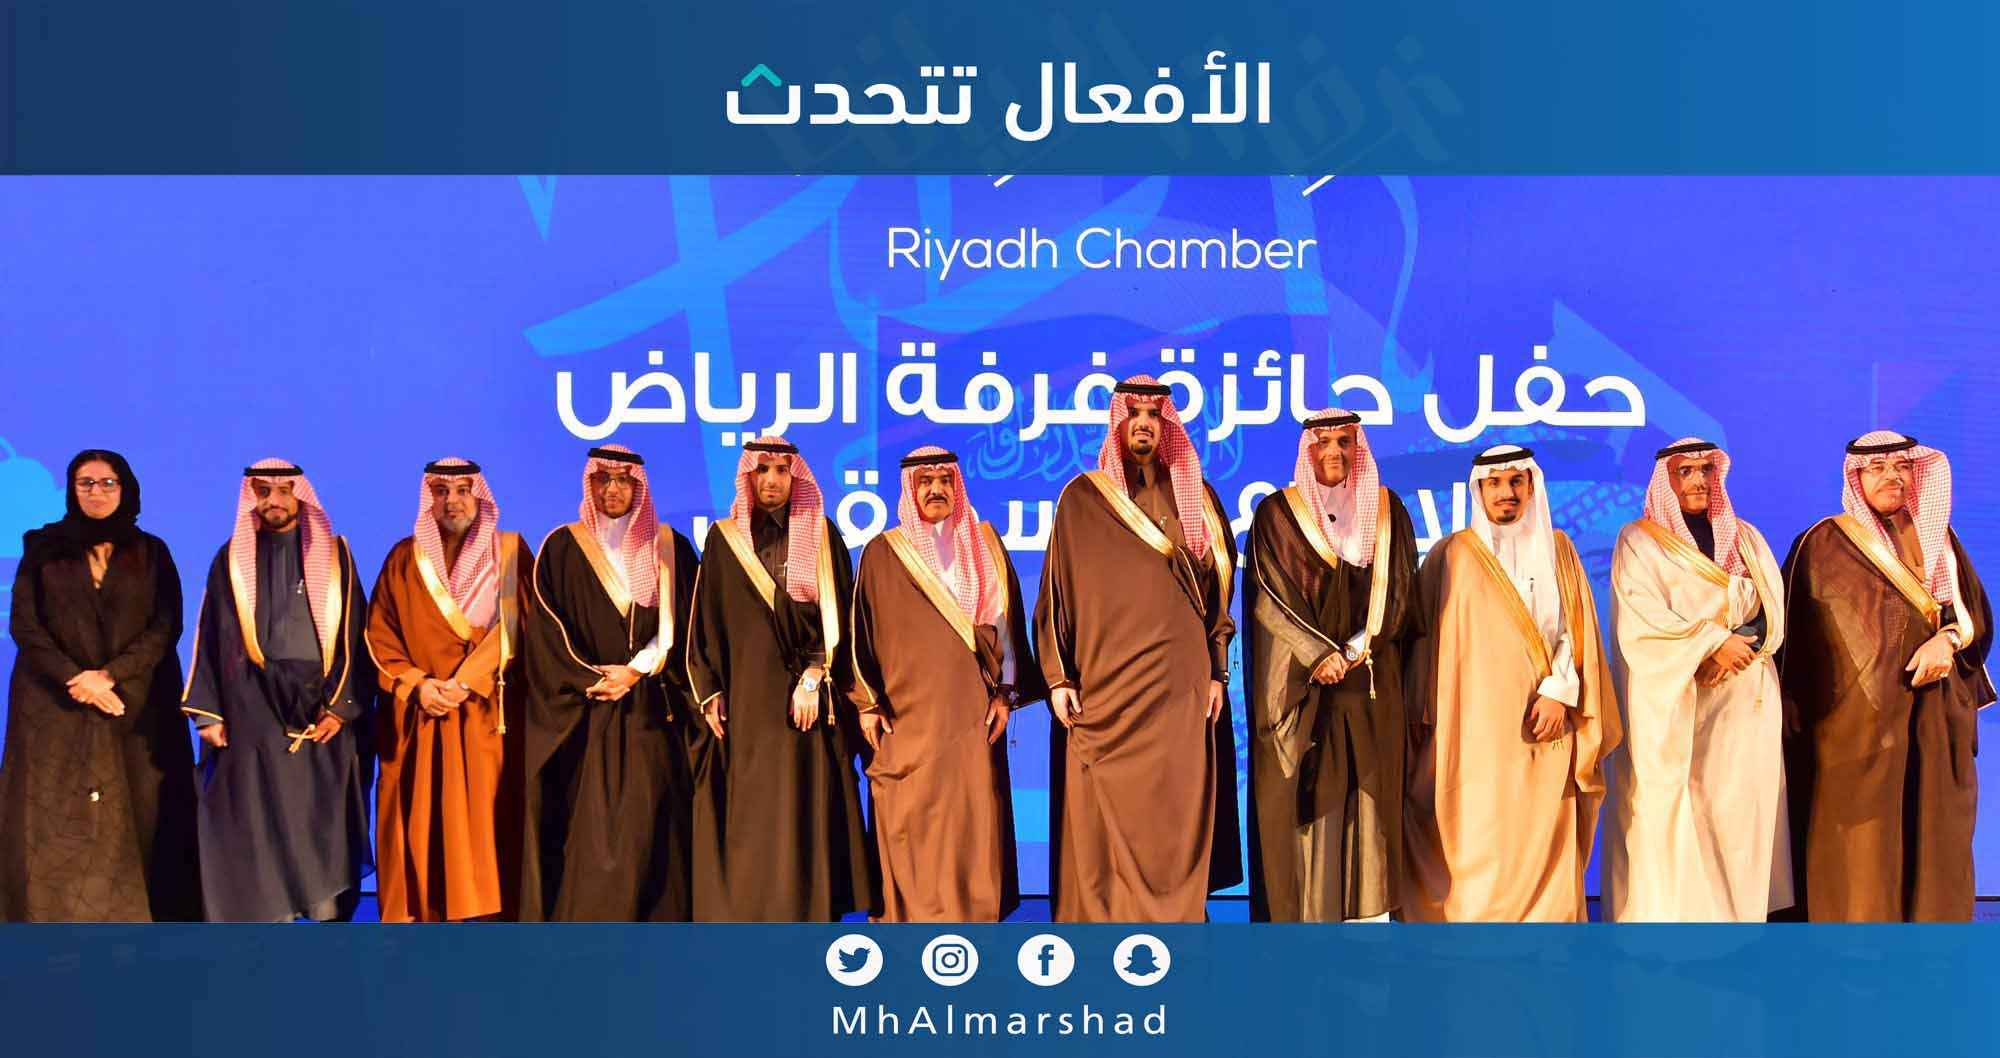 سعدنا برعاية سمو أمير منطقة الرياض بالنيابة وتشريف أمين منطقة الرياض في حفل جائزة غرفة الرياض